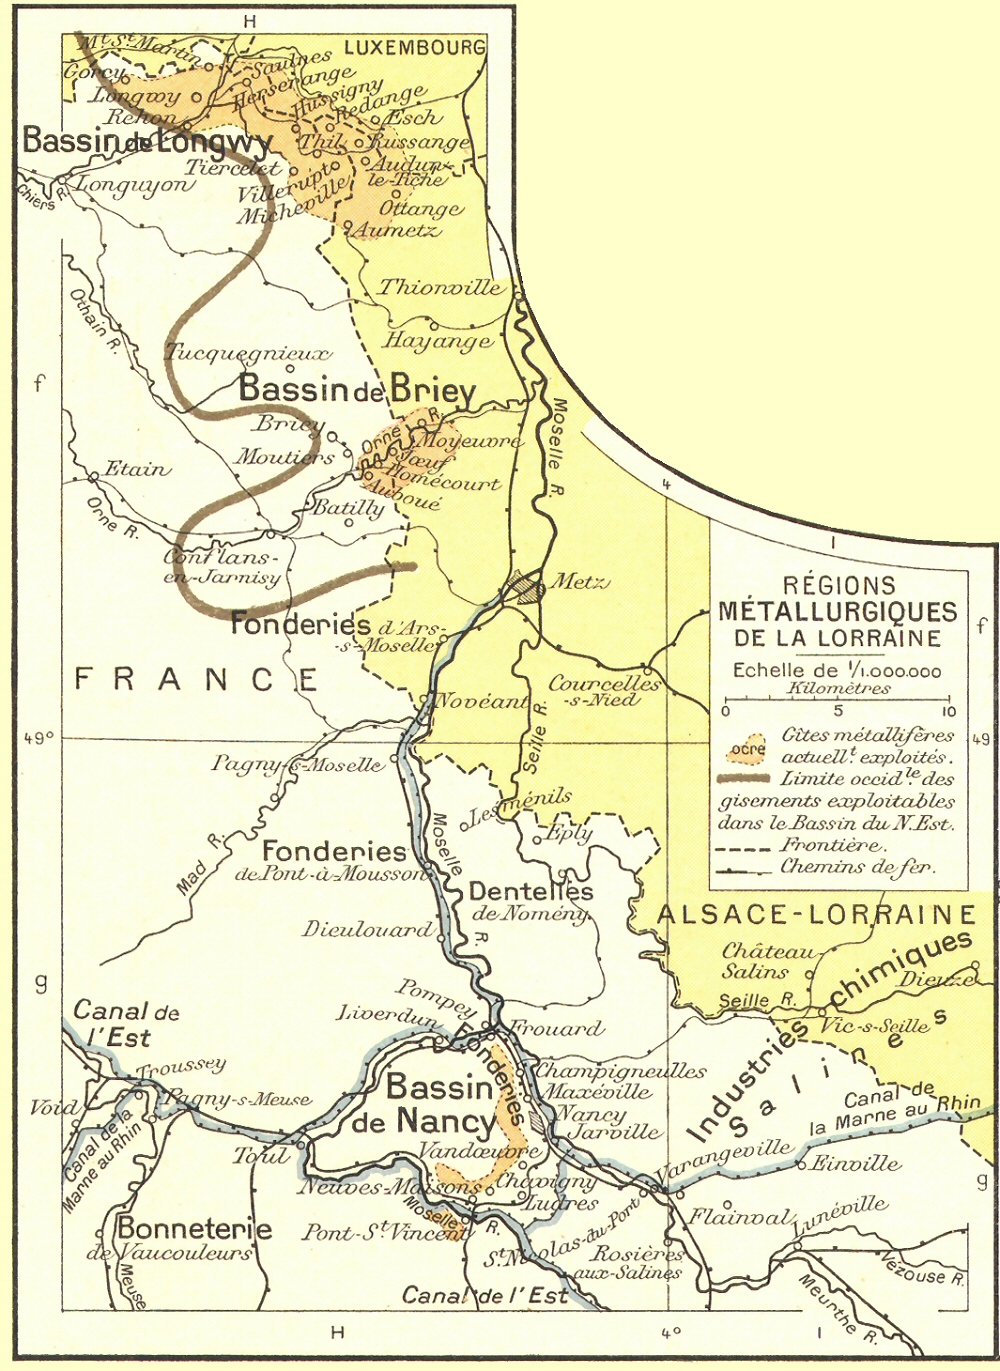 Carte des rgions mtallurgiques de la Lorraine.